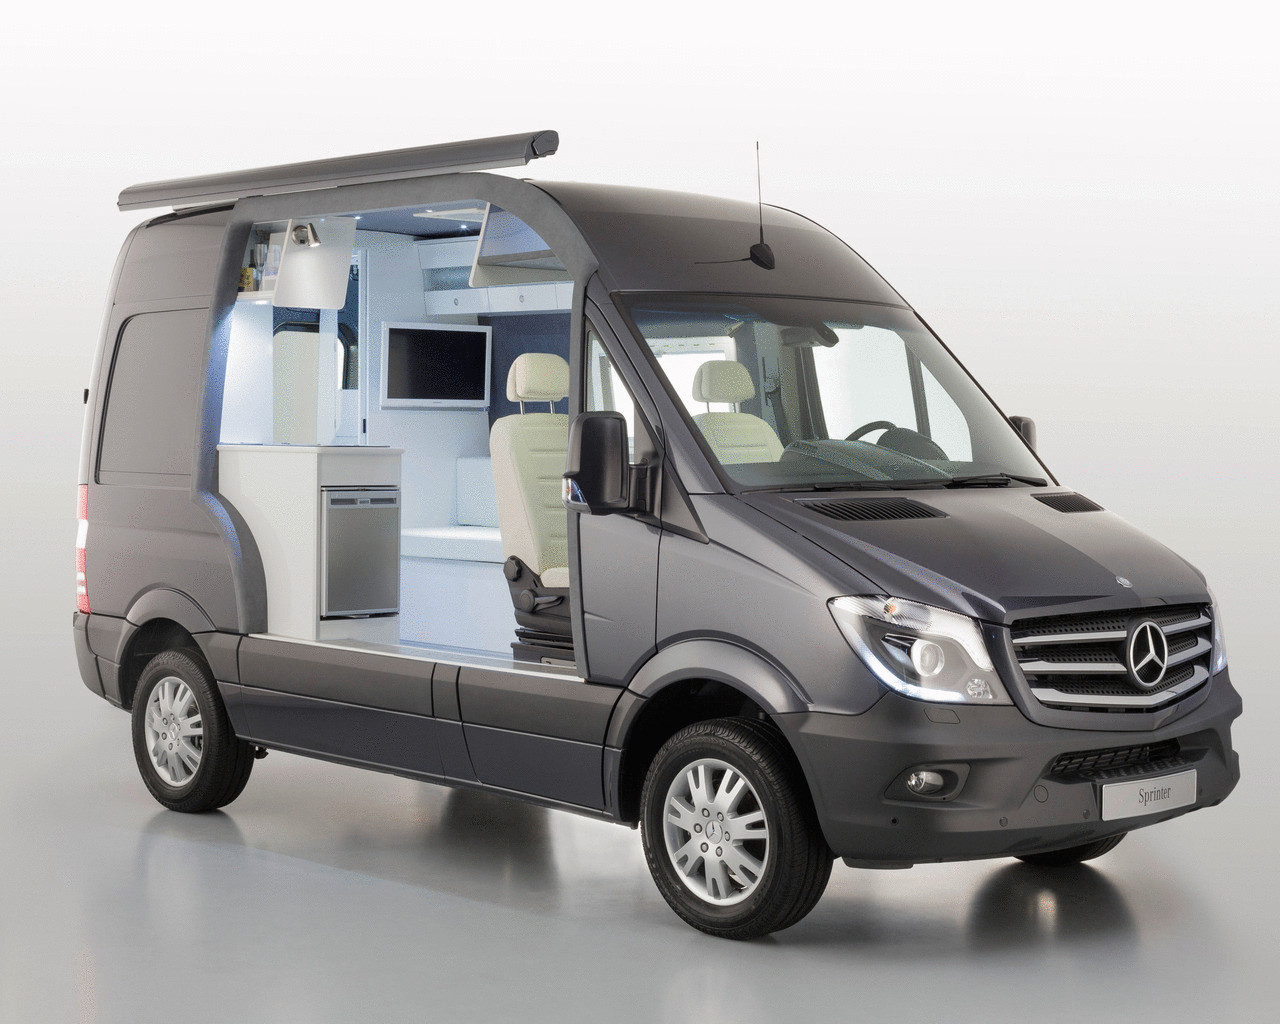 Mercedes-Benz Sprinter можно превратить в мини-квартиру